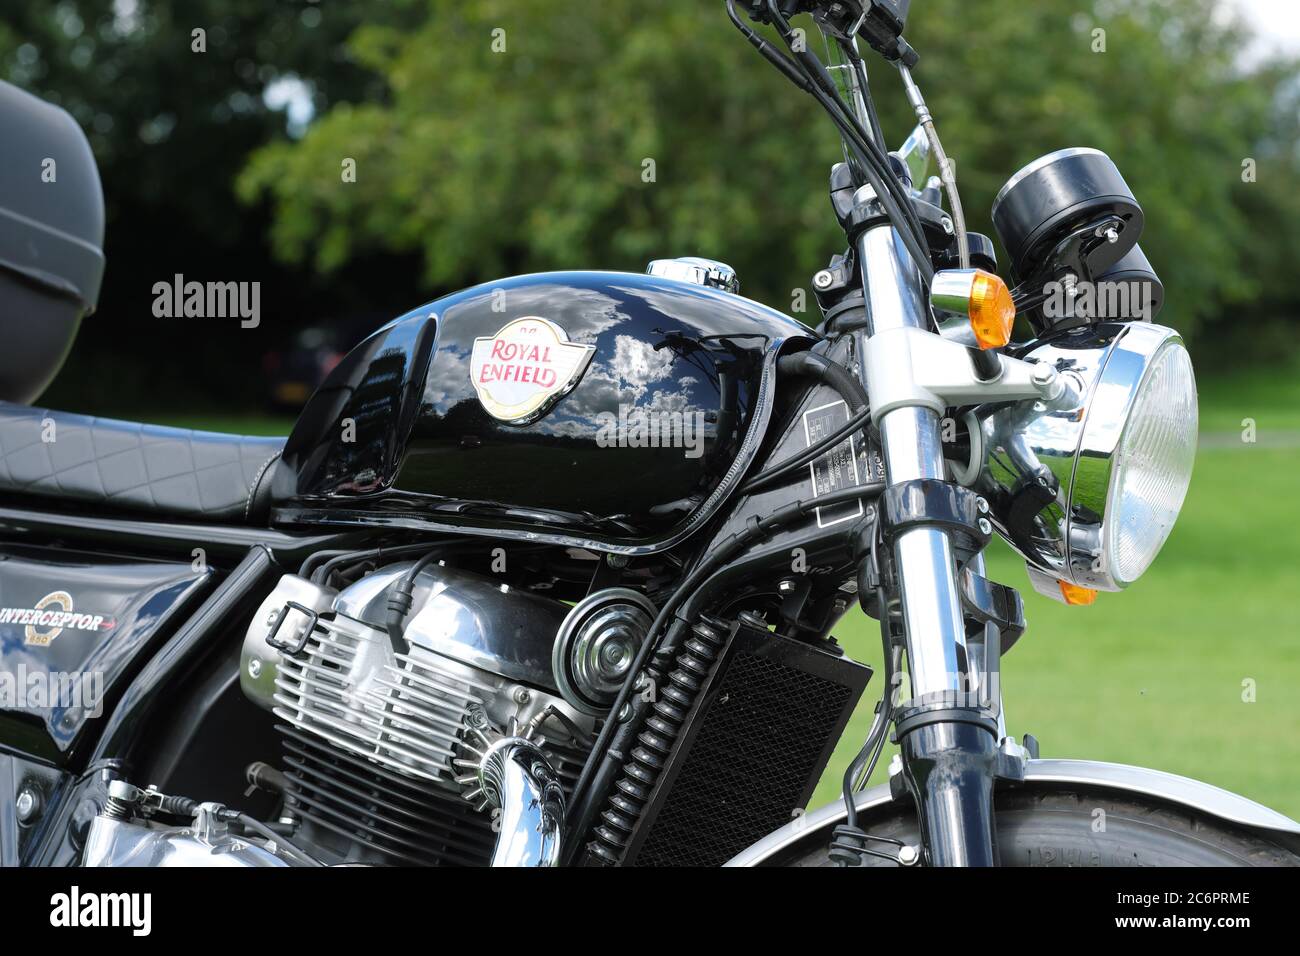 Royal Enfield Interceptor 650cc moto vue au Royaume-Uni 2020 Banque D'Images